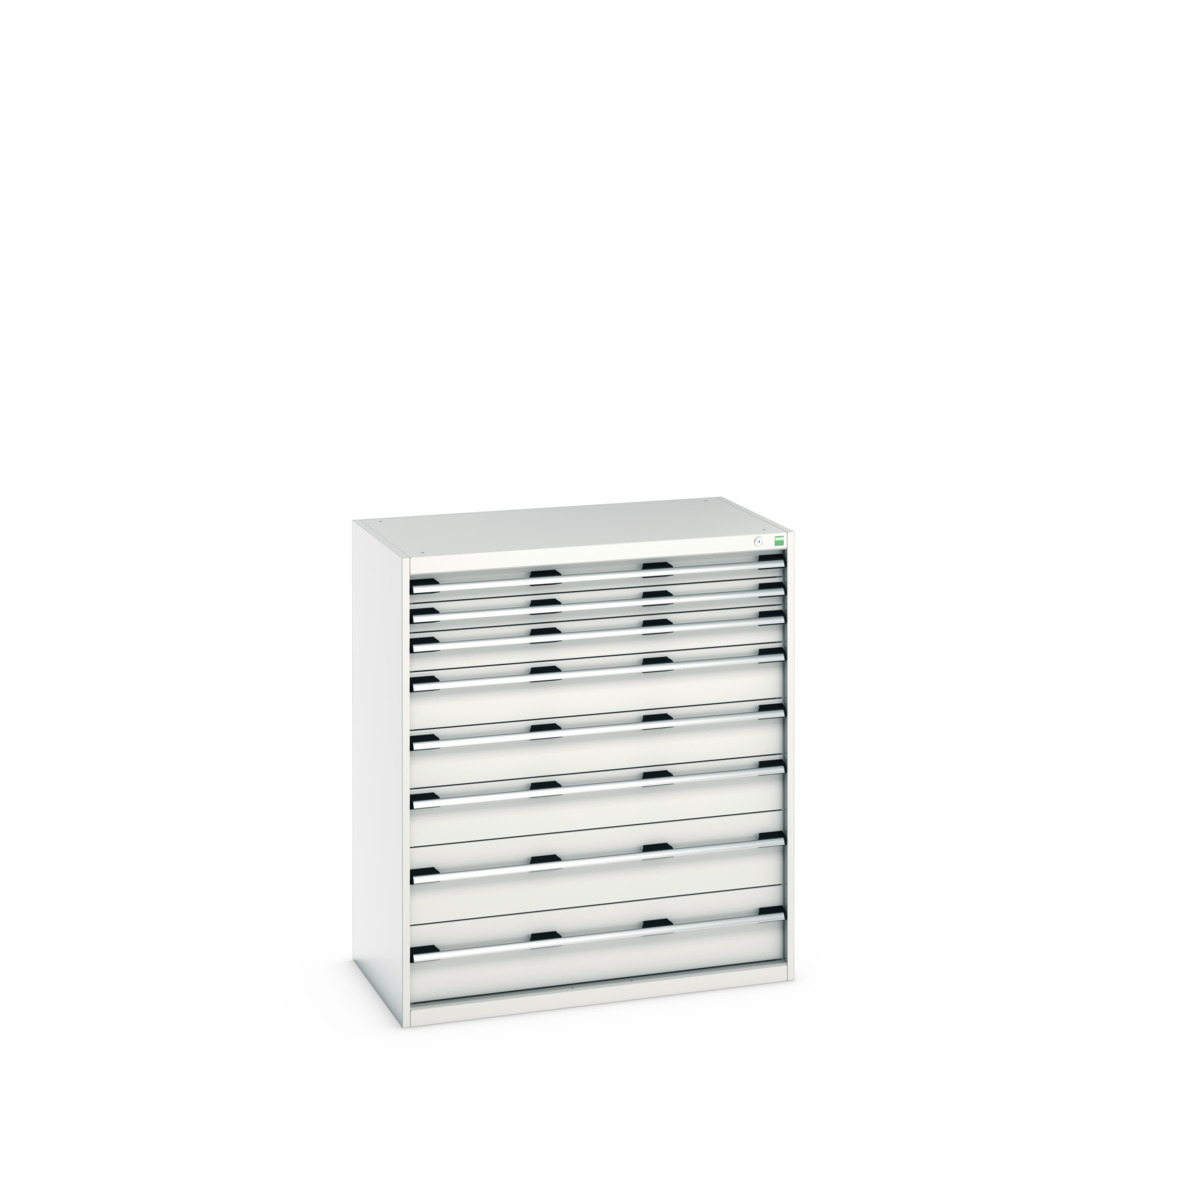 40021039.16V - cubio drawer cabinet